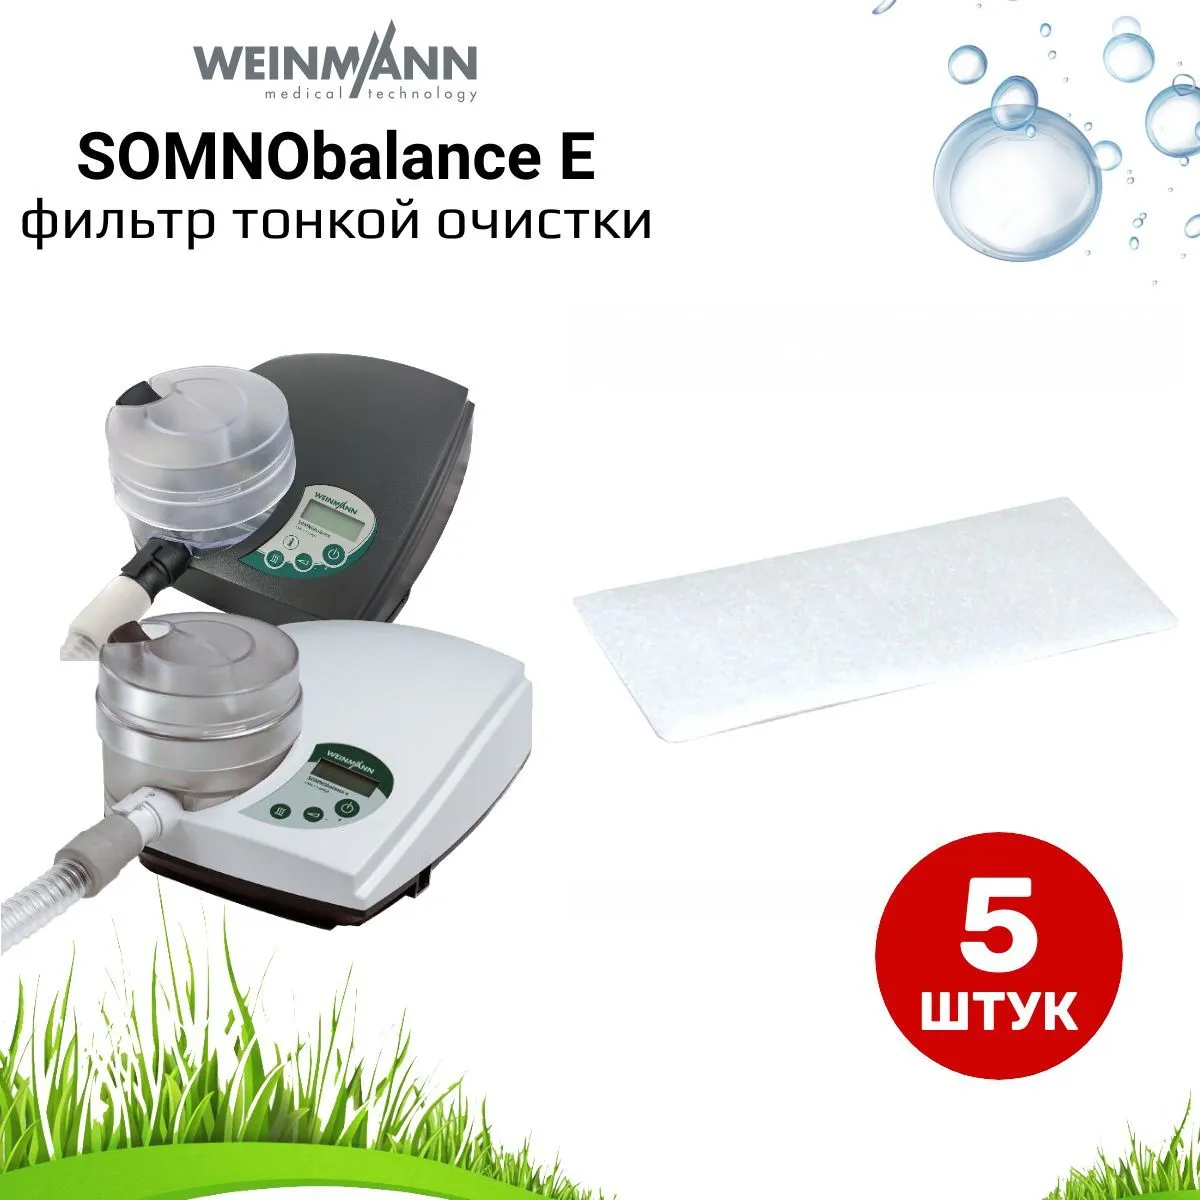 Weinmann SOMNObalance E фильтр тонкой очистки (5 штук) для сипап